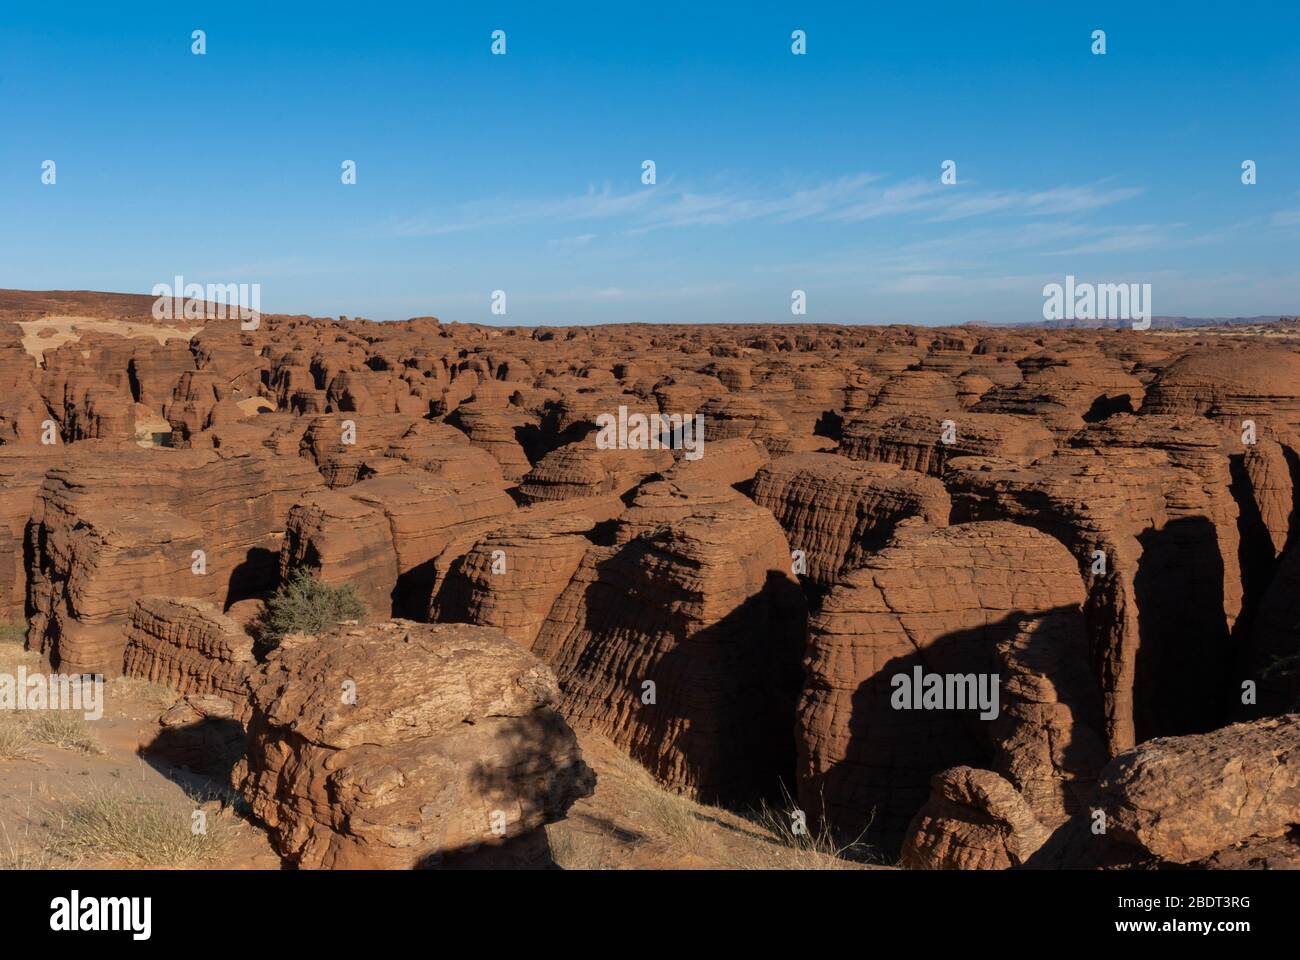 Labyrithe de formation de roches appelé d'Oyo dans le plateau Ennedi sur dessert Sahara, Tchad, Afrique. Banque D'Images